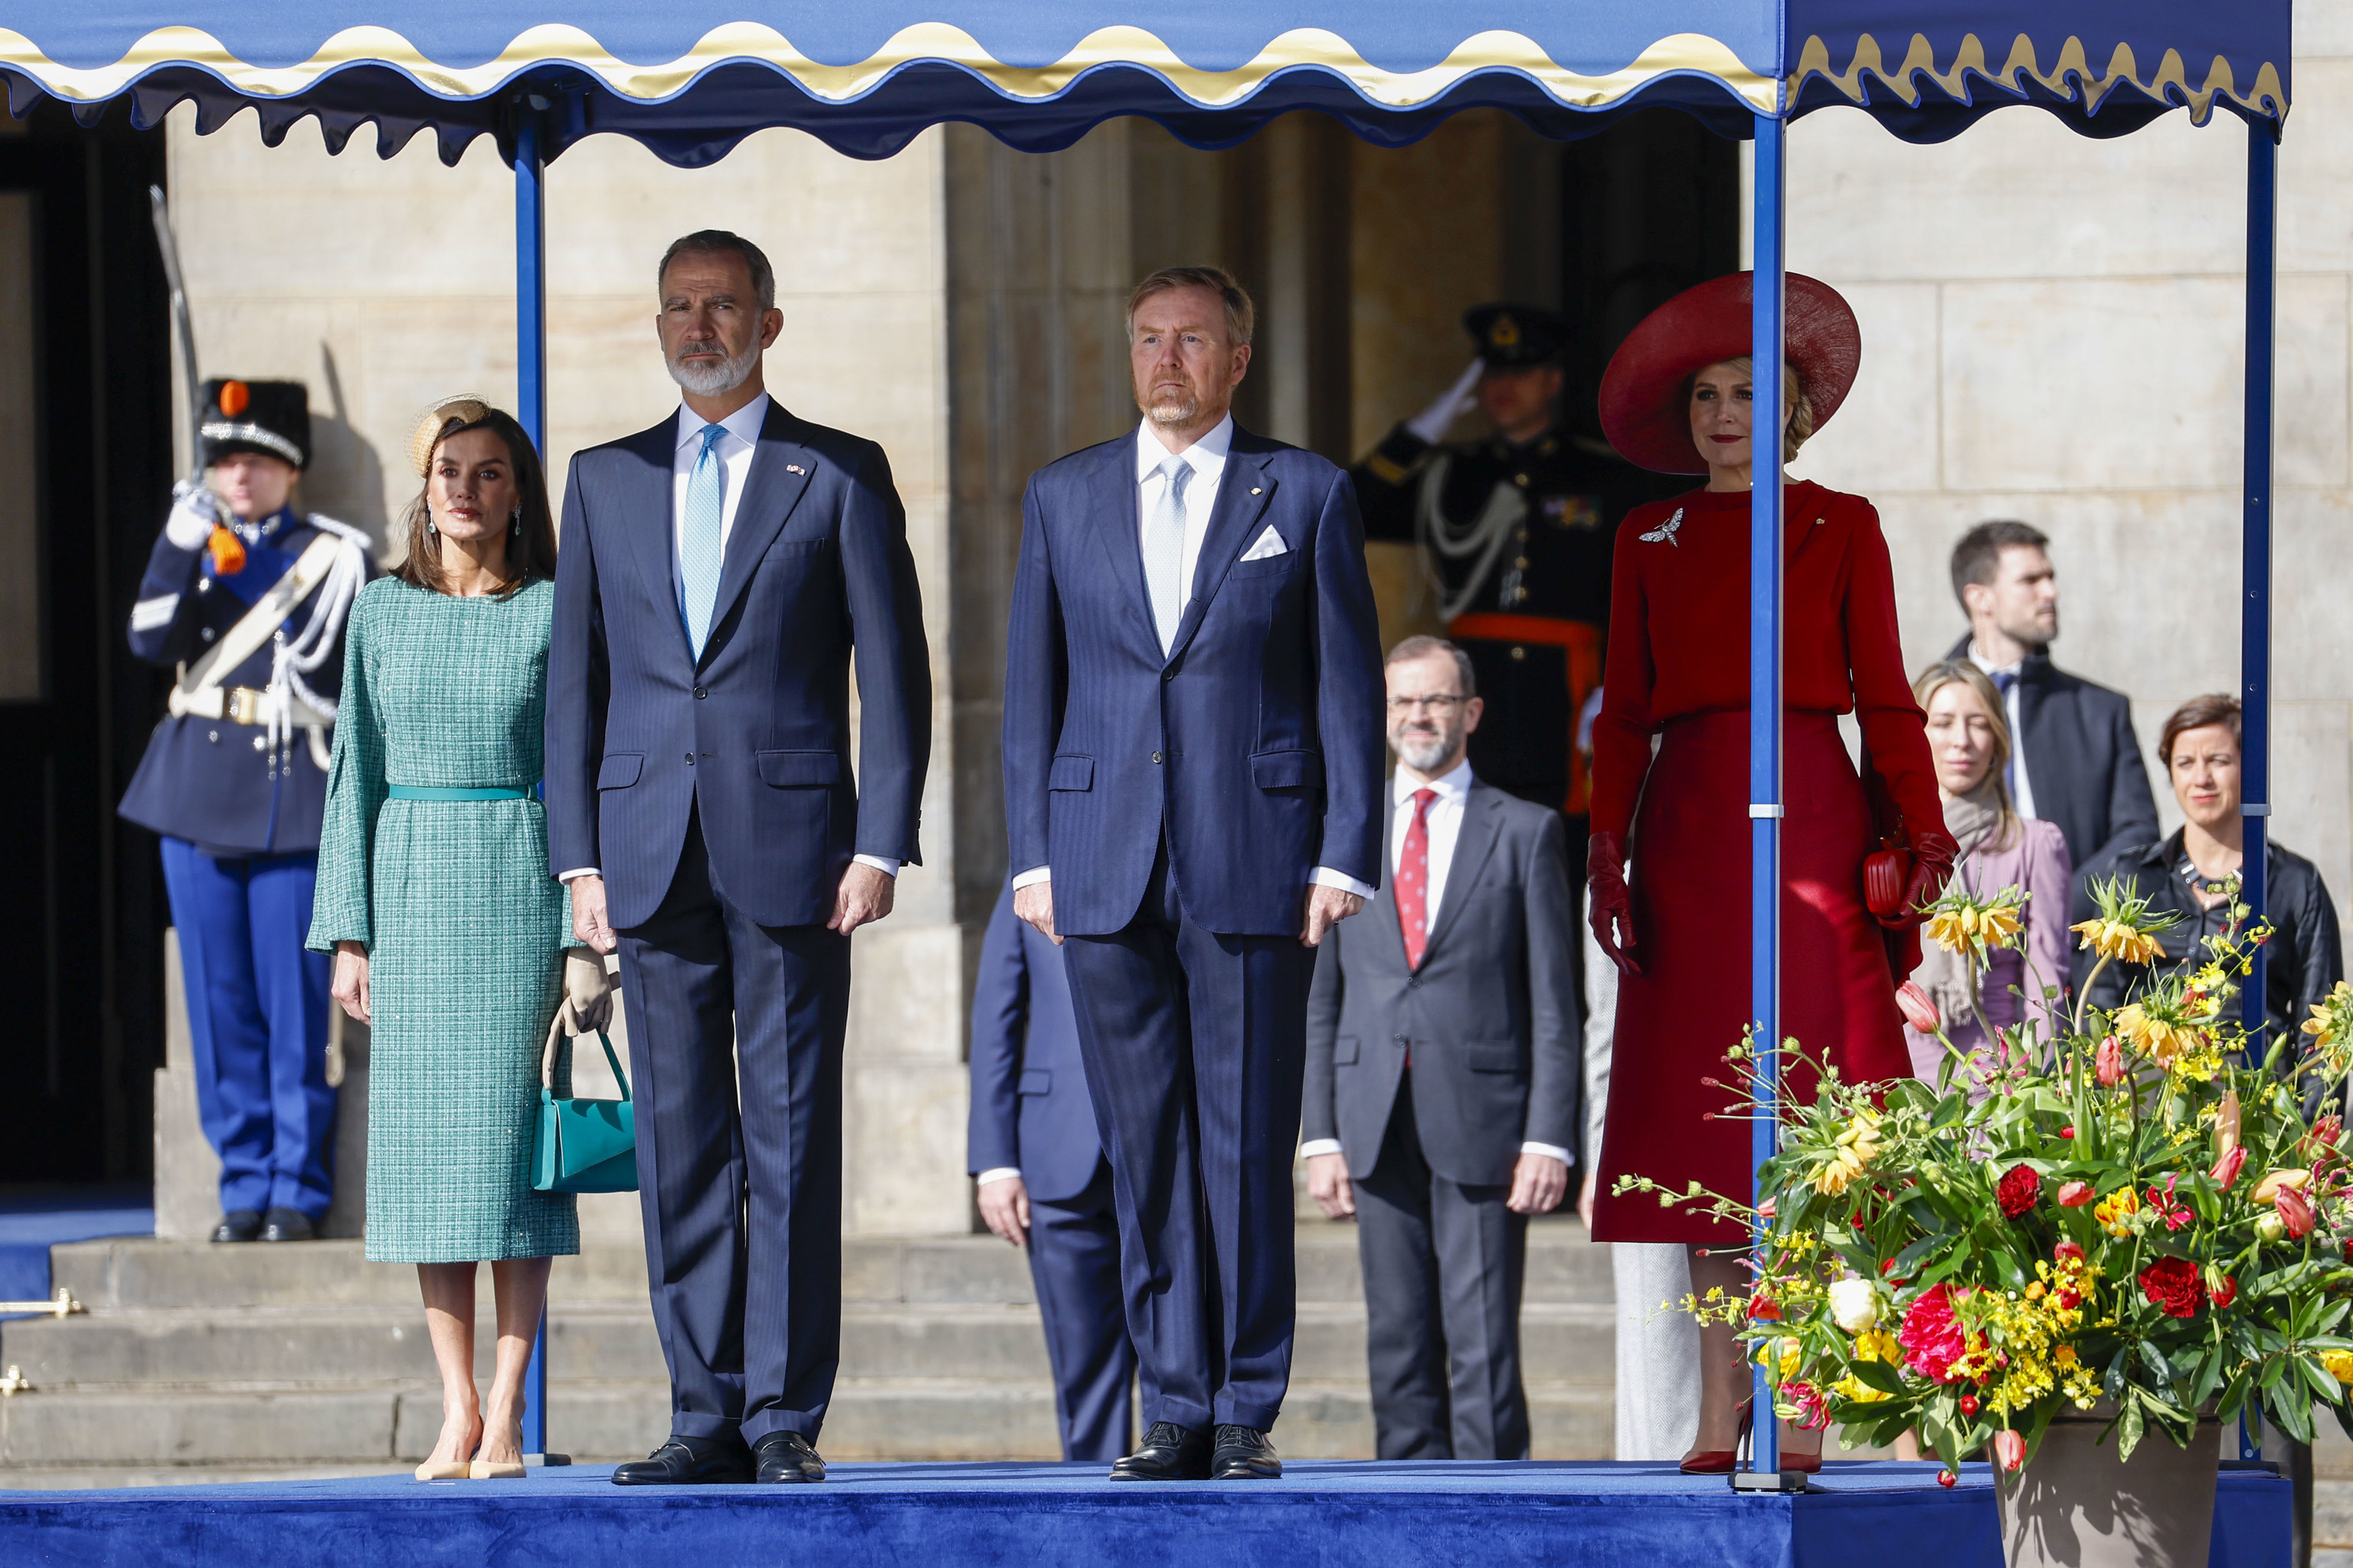 Los Reyes de Espa�a, Felipe VI y Letizia, junto a los monarcas de Pa�ses Bajos, Guillermo y M�xima